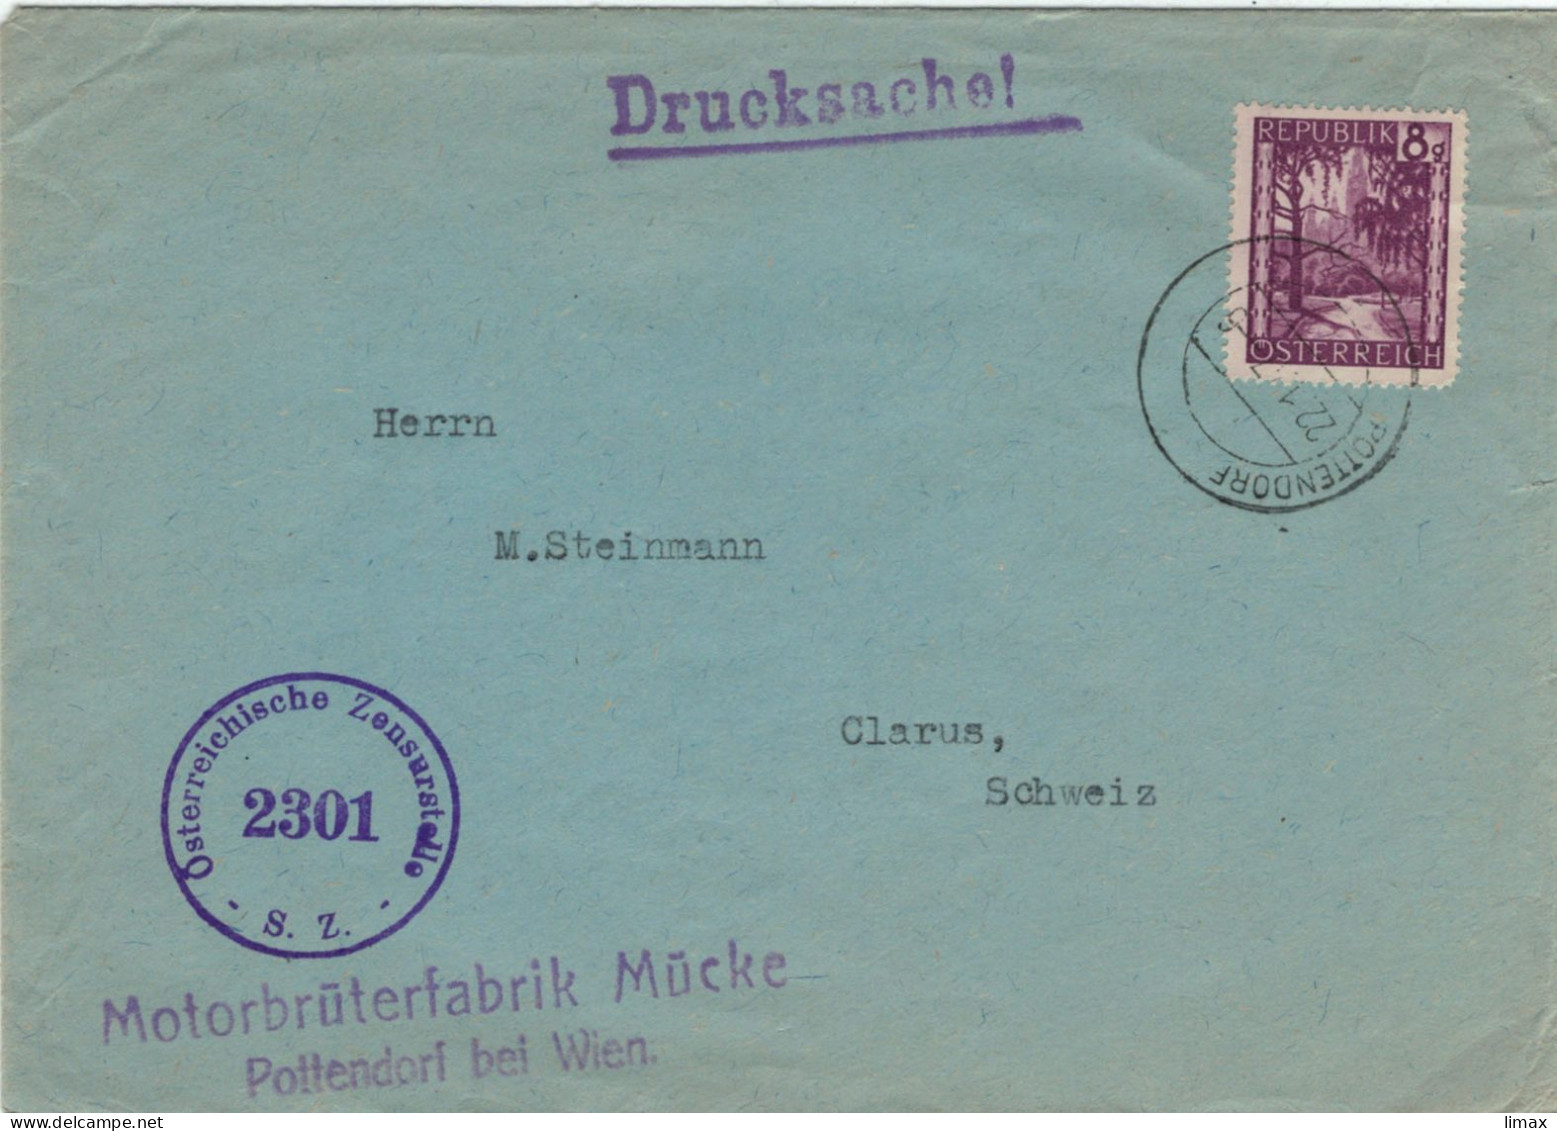 Motorbrüterfabrik Mücke Pottendorf Bei Wien 1947 Zensur 2301 > Glarus - Geflügelzucht Tierschutz Tierleid Skandale - Storia Postale